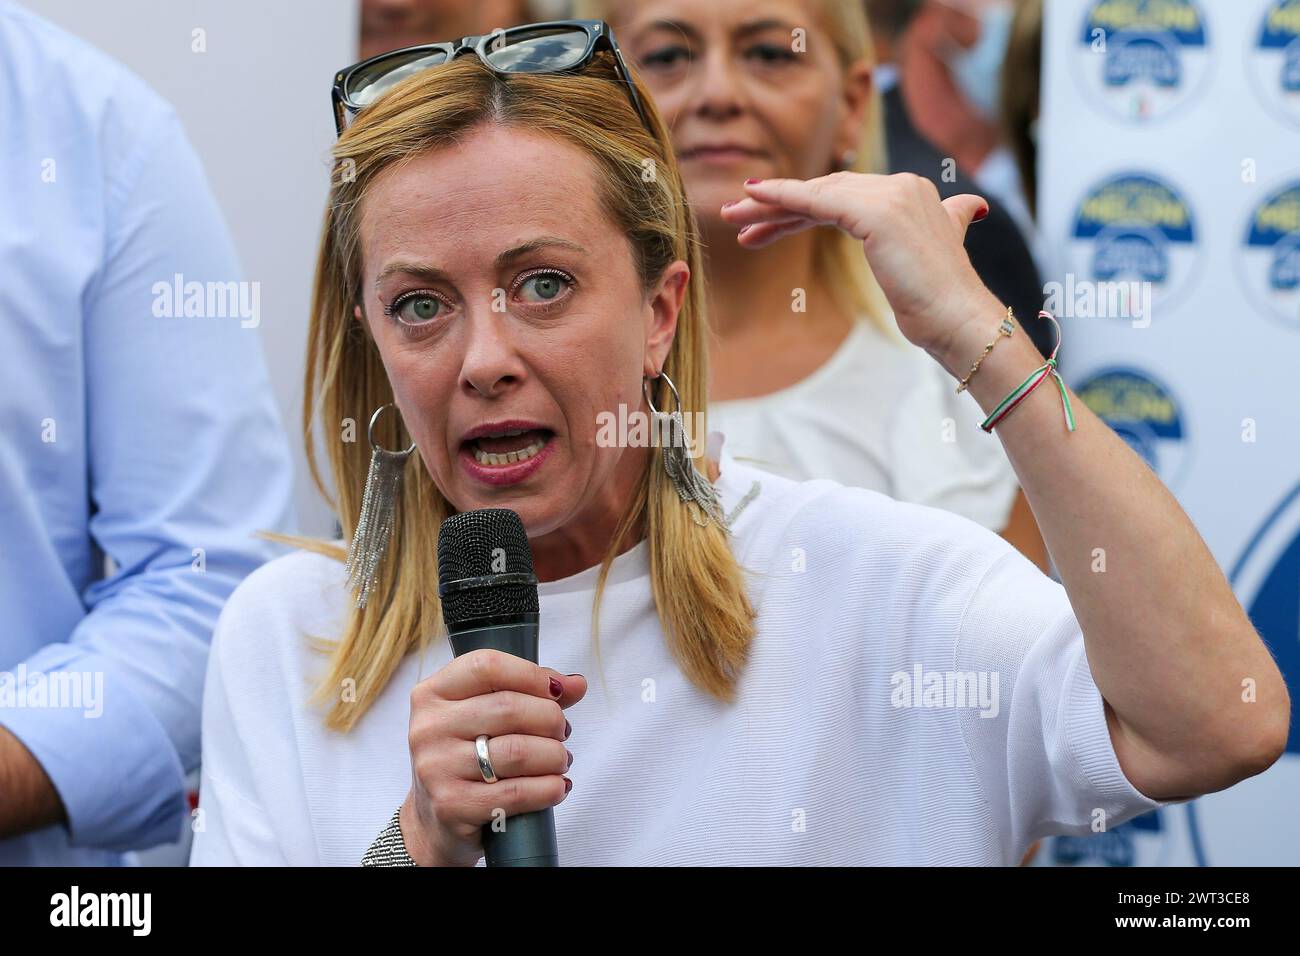 La leader del partito politico Fratelli d'Italia, Giorgia Meloni, durante un incontro politico a Caserta, per le elezioni amministrative. Foto Stock